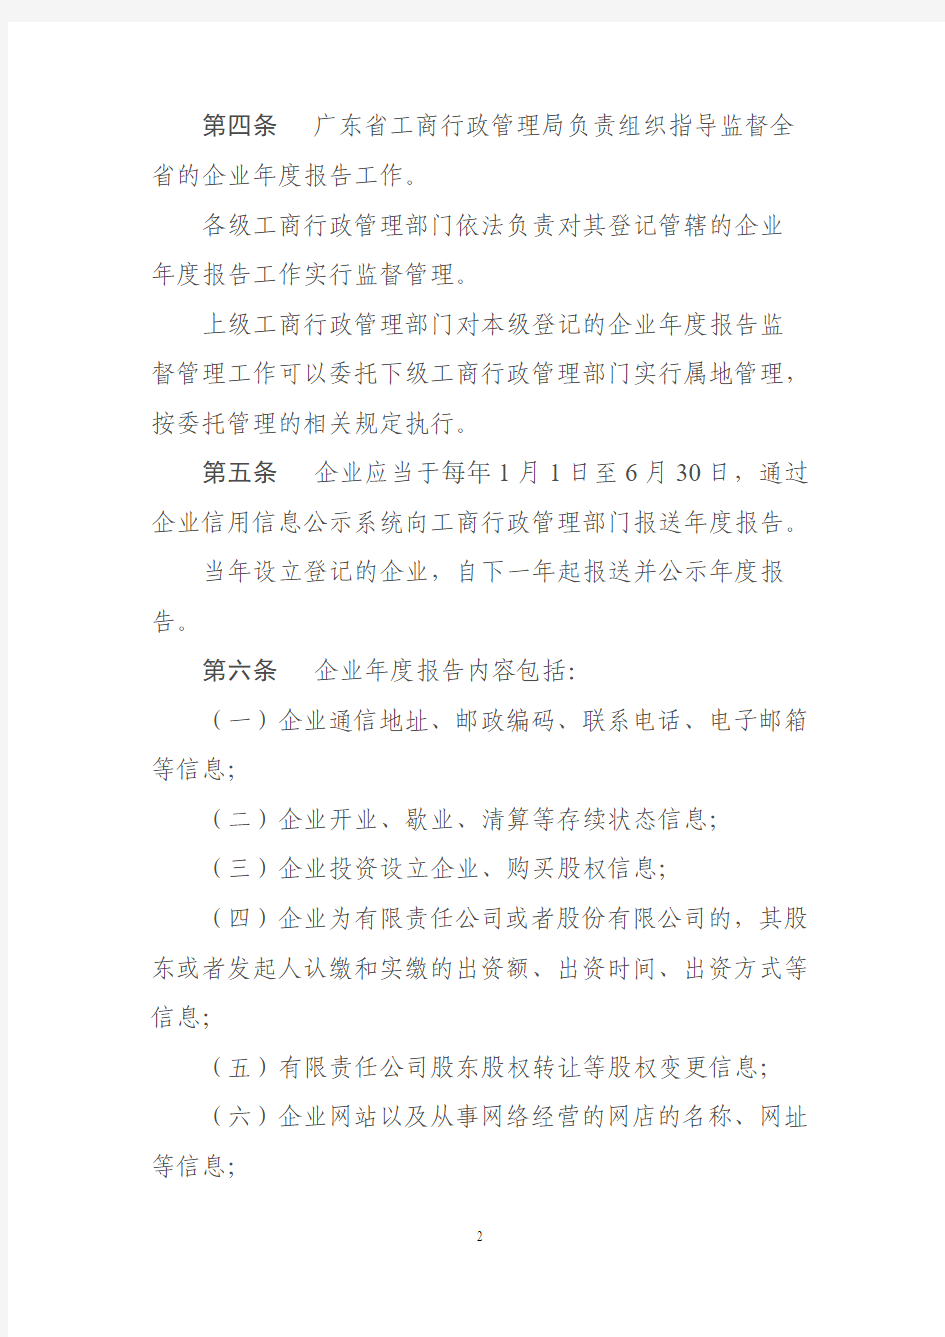 广东省工商行政管理局关于企业年度报告实施办法